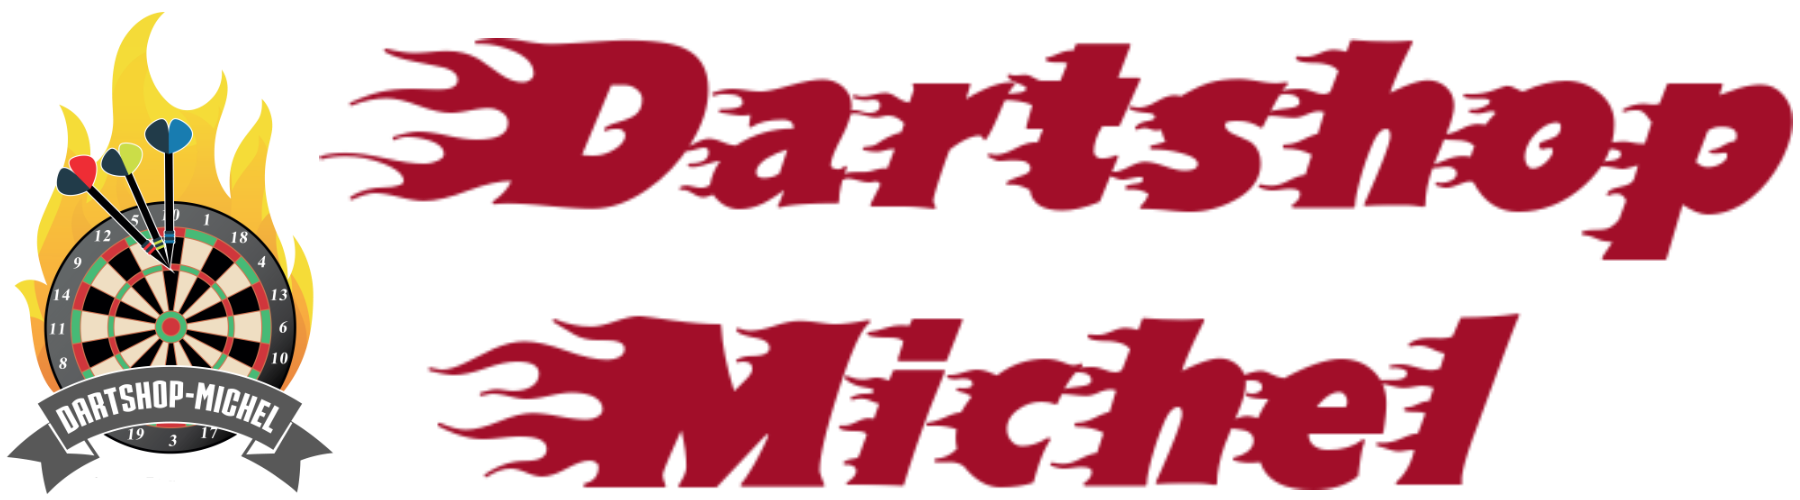 Dartshop-Michel